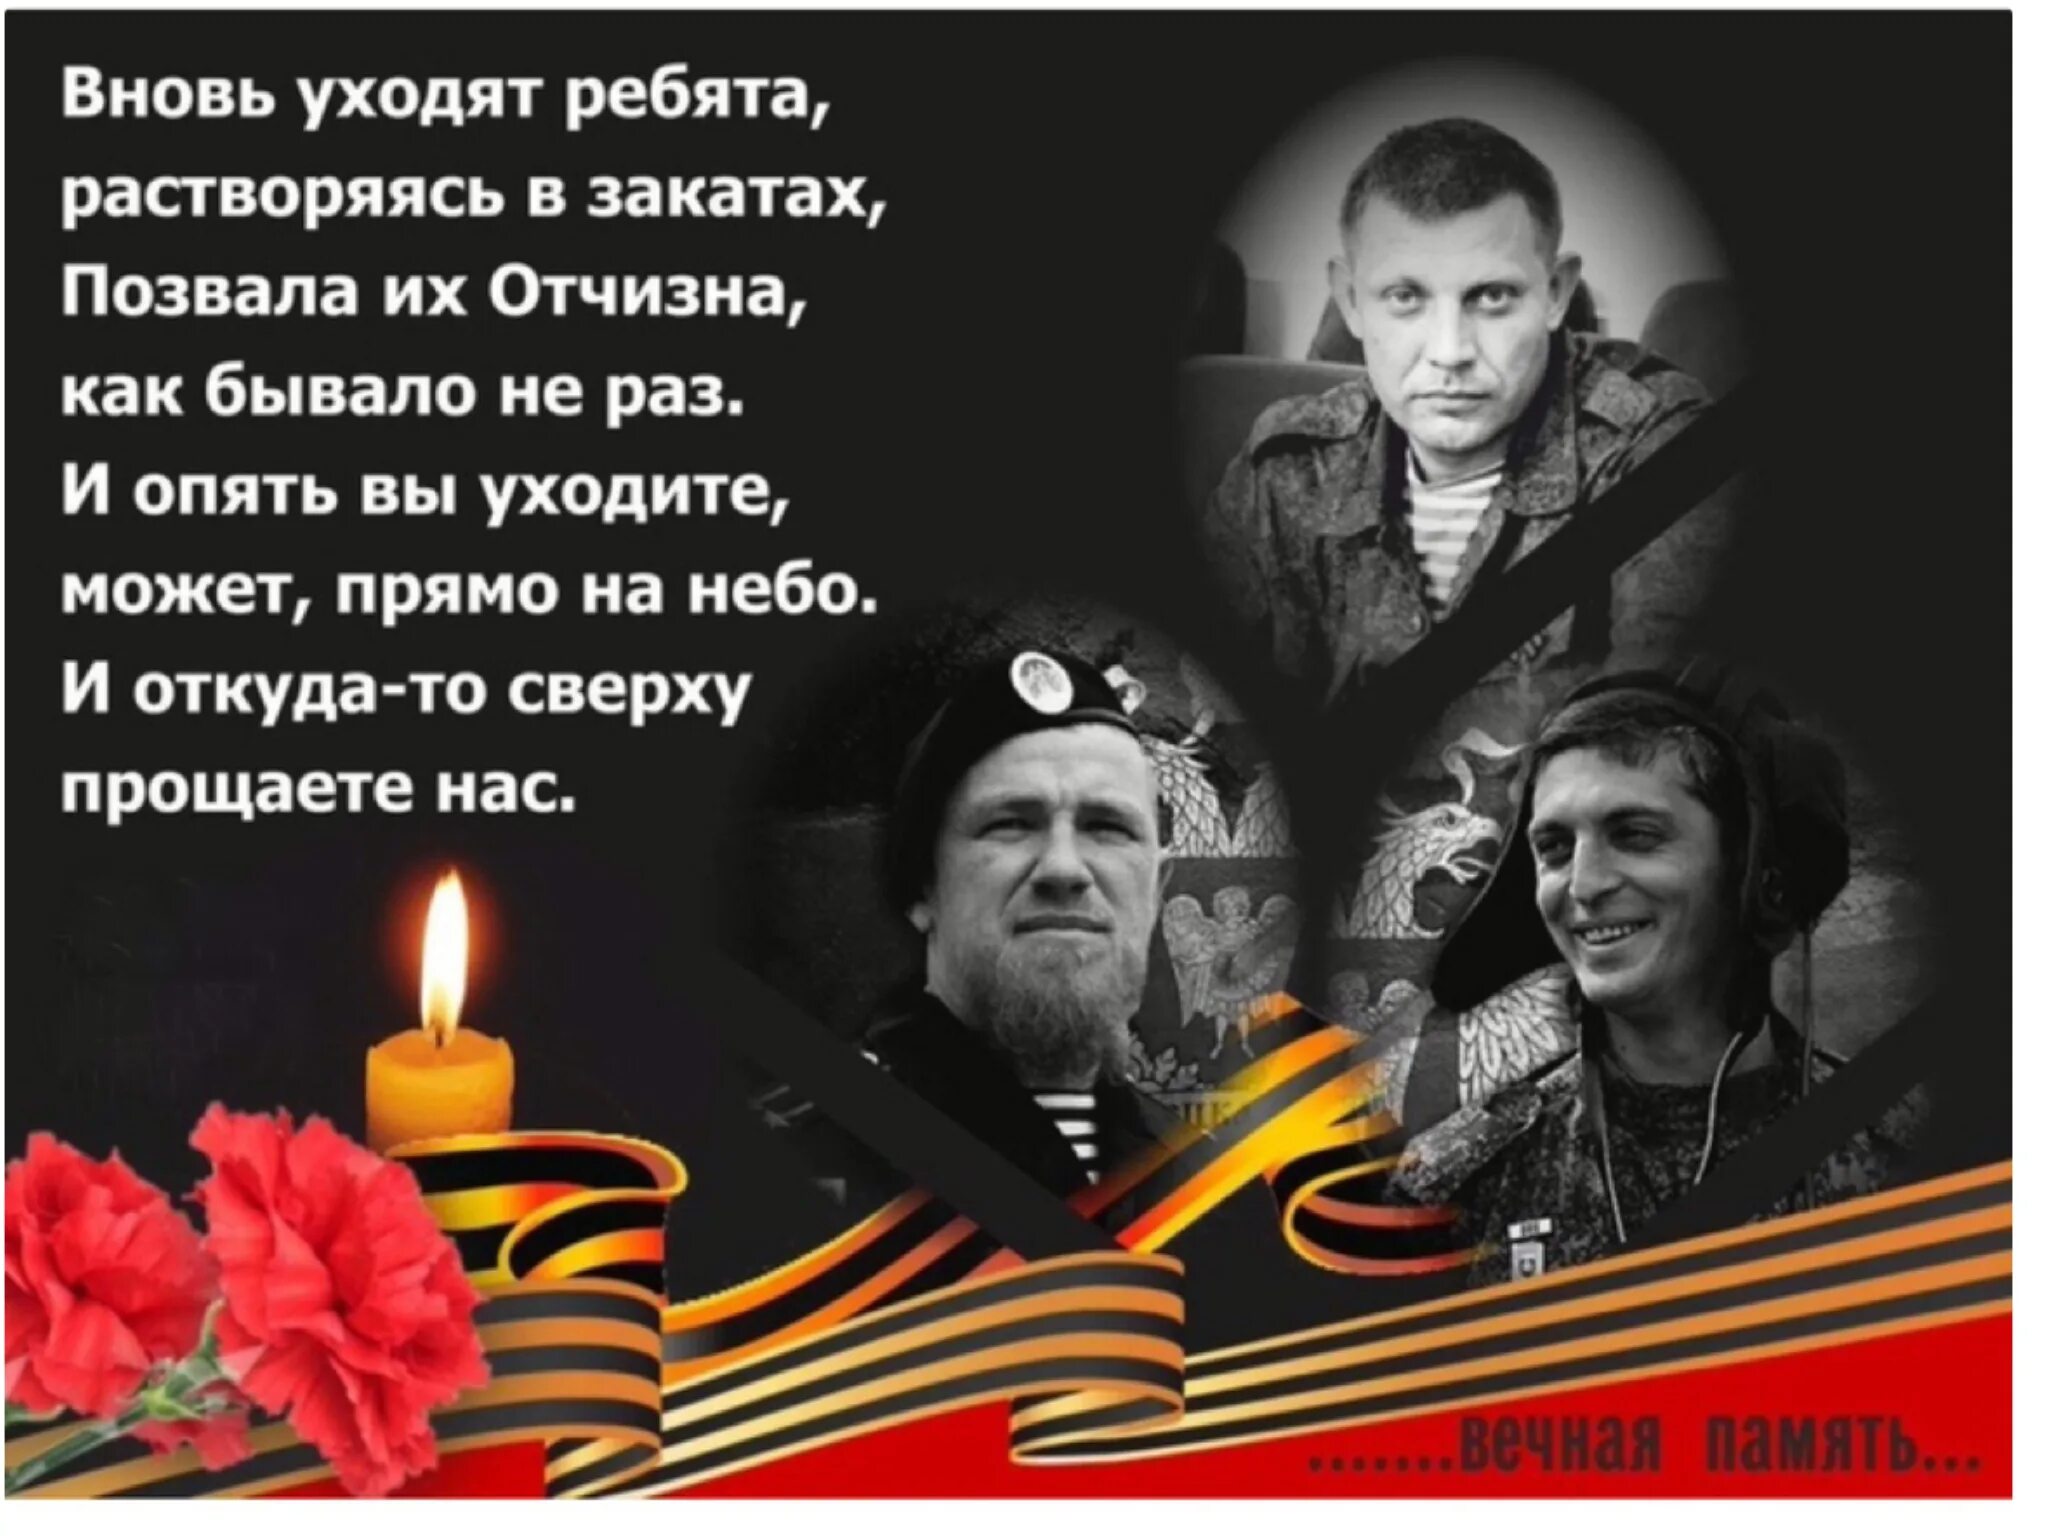 Песня живите ребята. Захарченко светлая память. Вечнаяпамять героям Донасса. Вечная память героям Донбасса. Вечная память погибшим героям Донбасса.